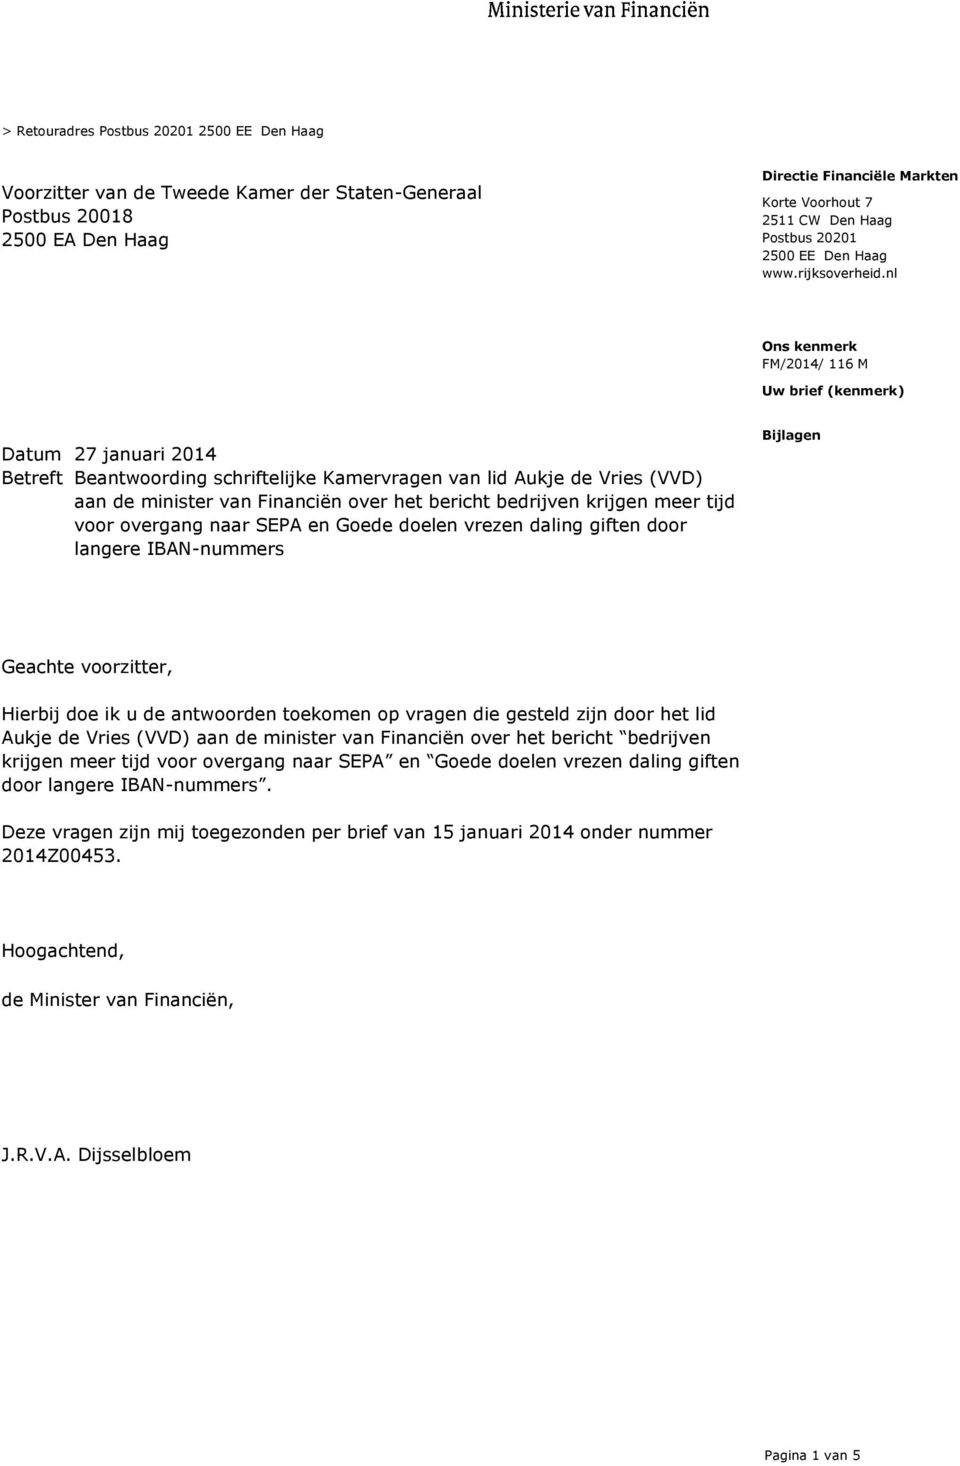 nl FM/2014/ 116 M Uw brief (kenmerk) Datum 27 januari 2014 Betreft Beantwoording schriftelijke Kamervragen van lid Aukje de Vries (VVD) aan de minister van Financiën over het bericht bedrijven